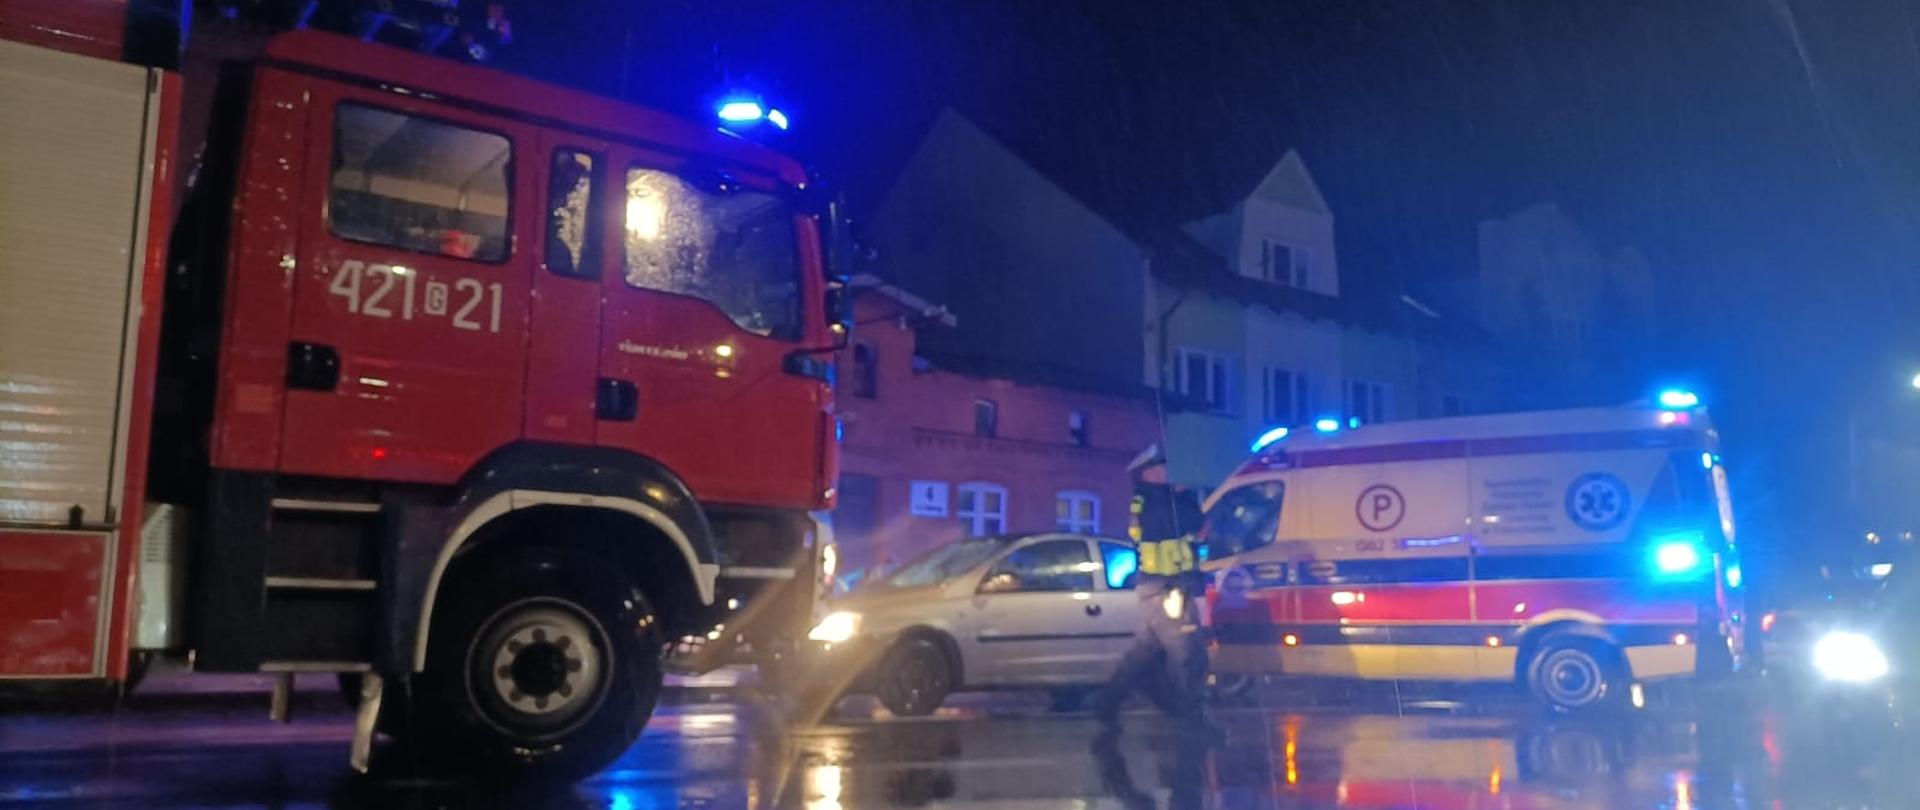 Zdjęcie przedstawia samochód pożarniczy, samochód osobowy i karetkę stojące na ulicy Stefana Batorego w Człuchowie. Przed samochodami przechodzi policjant, w tle widać budynki.